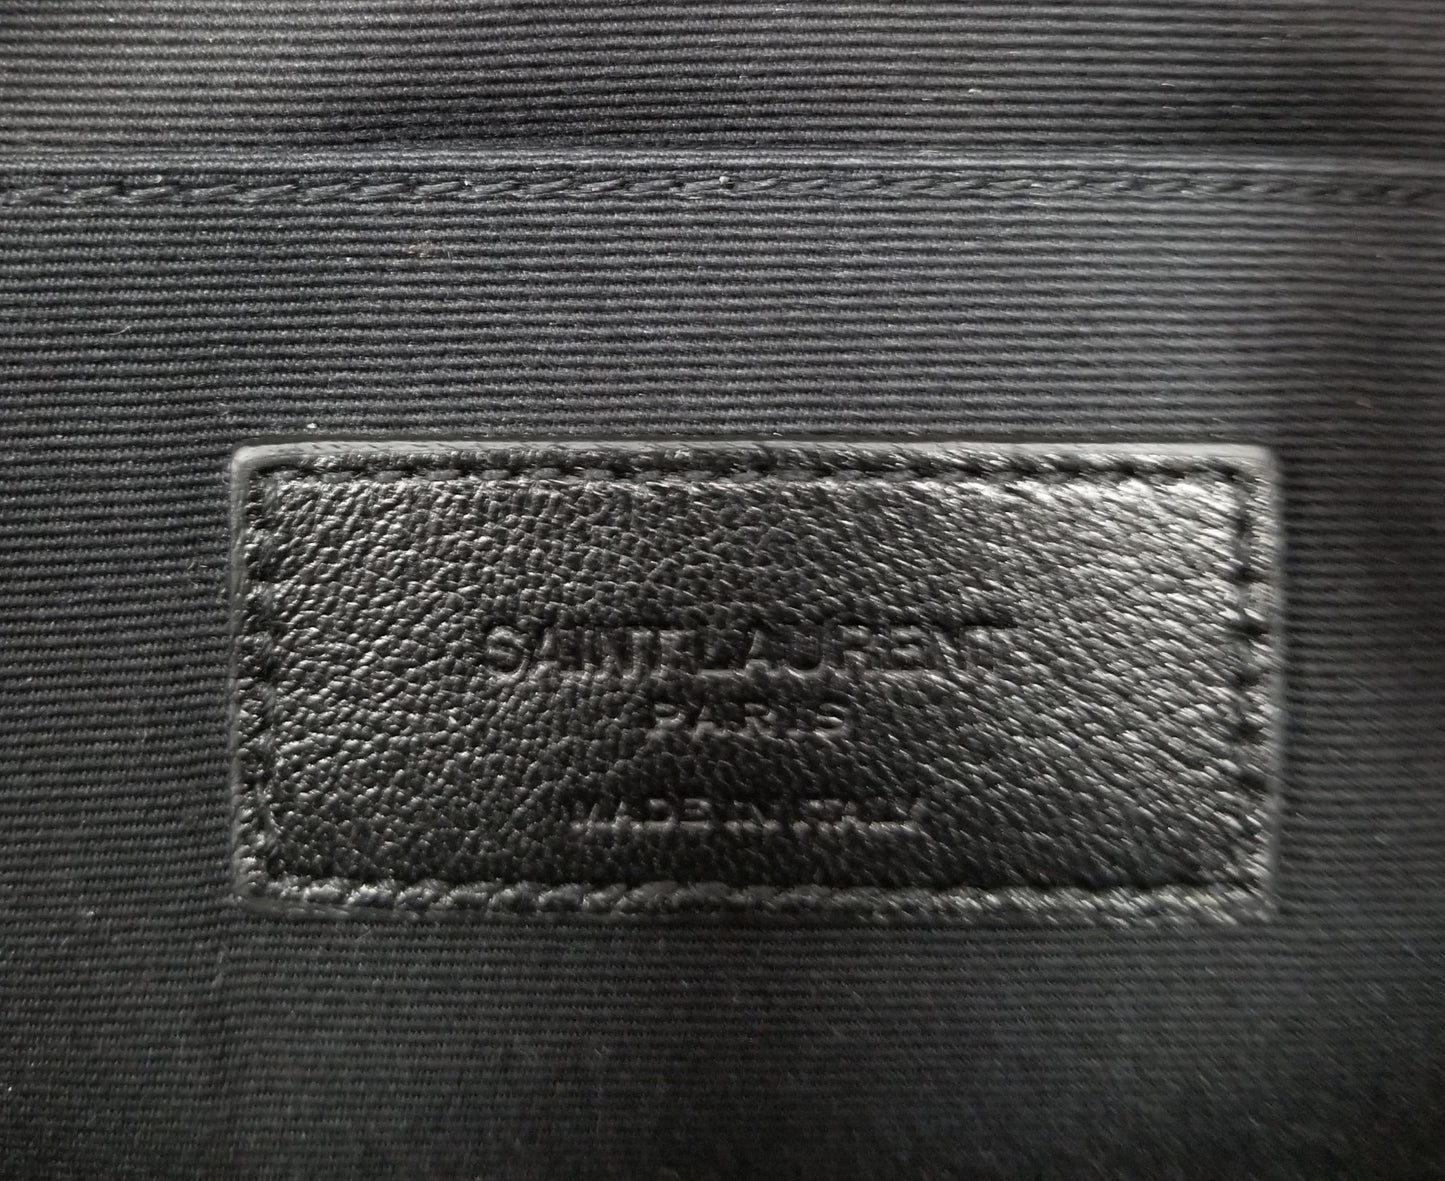 Authentic Saint Laurent Black Studded Leather Pouch